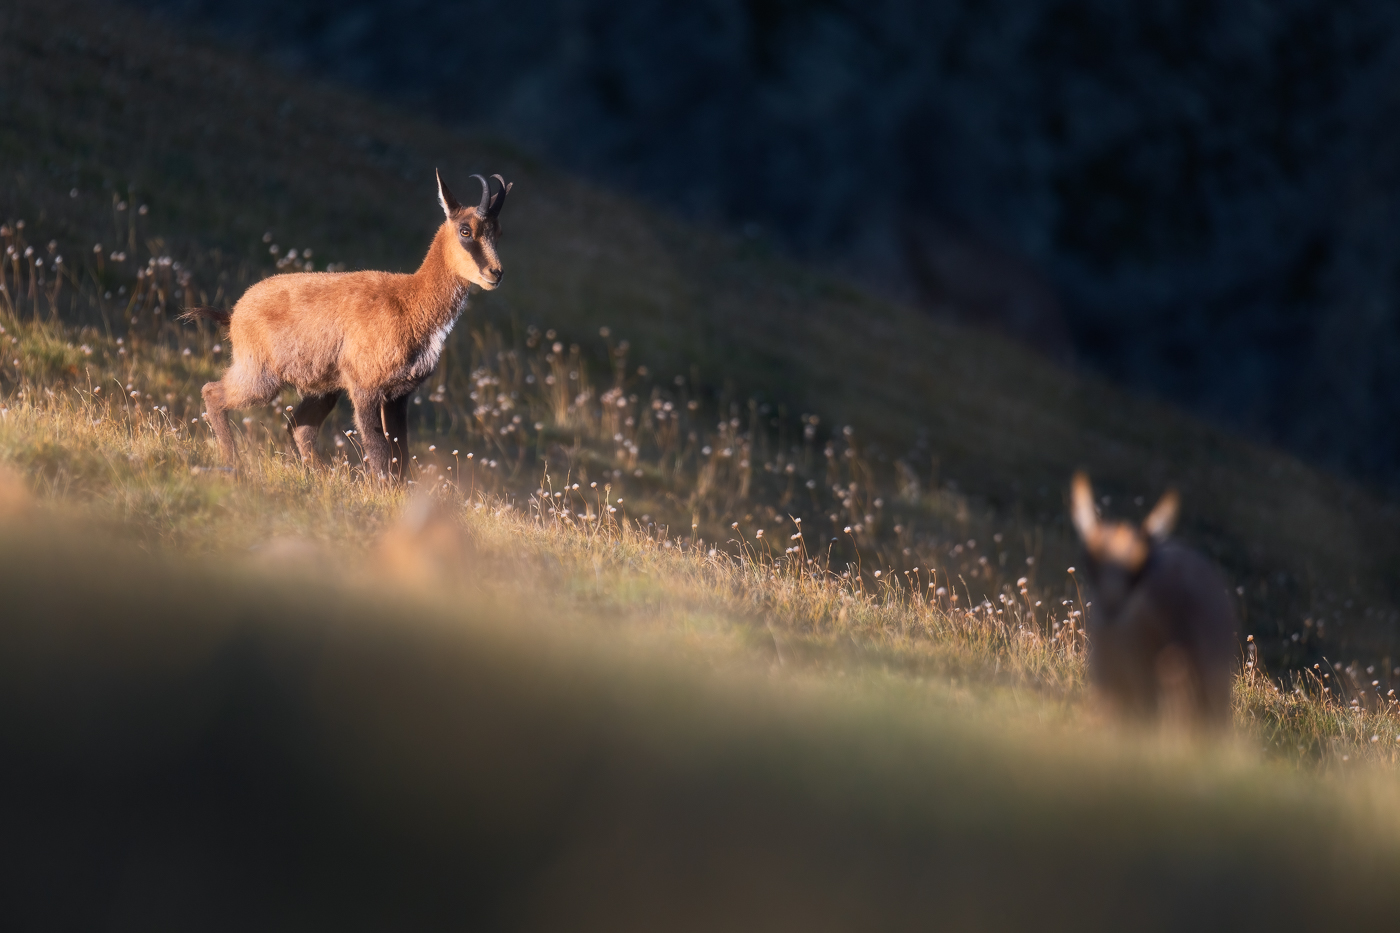 Giovani camosci appenninici (Rupicapra pyrenaica ornata) ritrovano tutta la loro energia alle prime calde luci del giorno. Parco Nazionale dei Monti Sibillini, Italia.